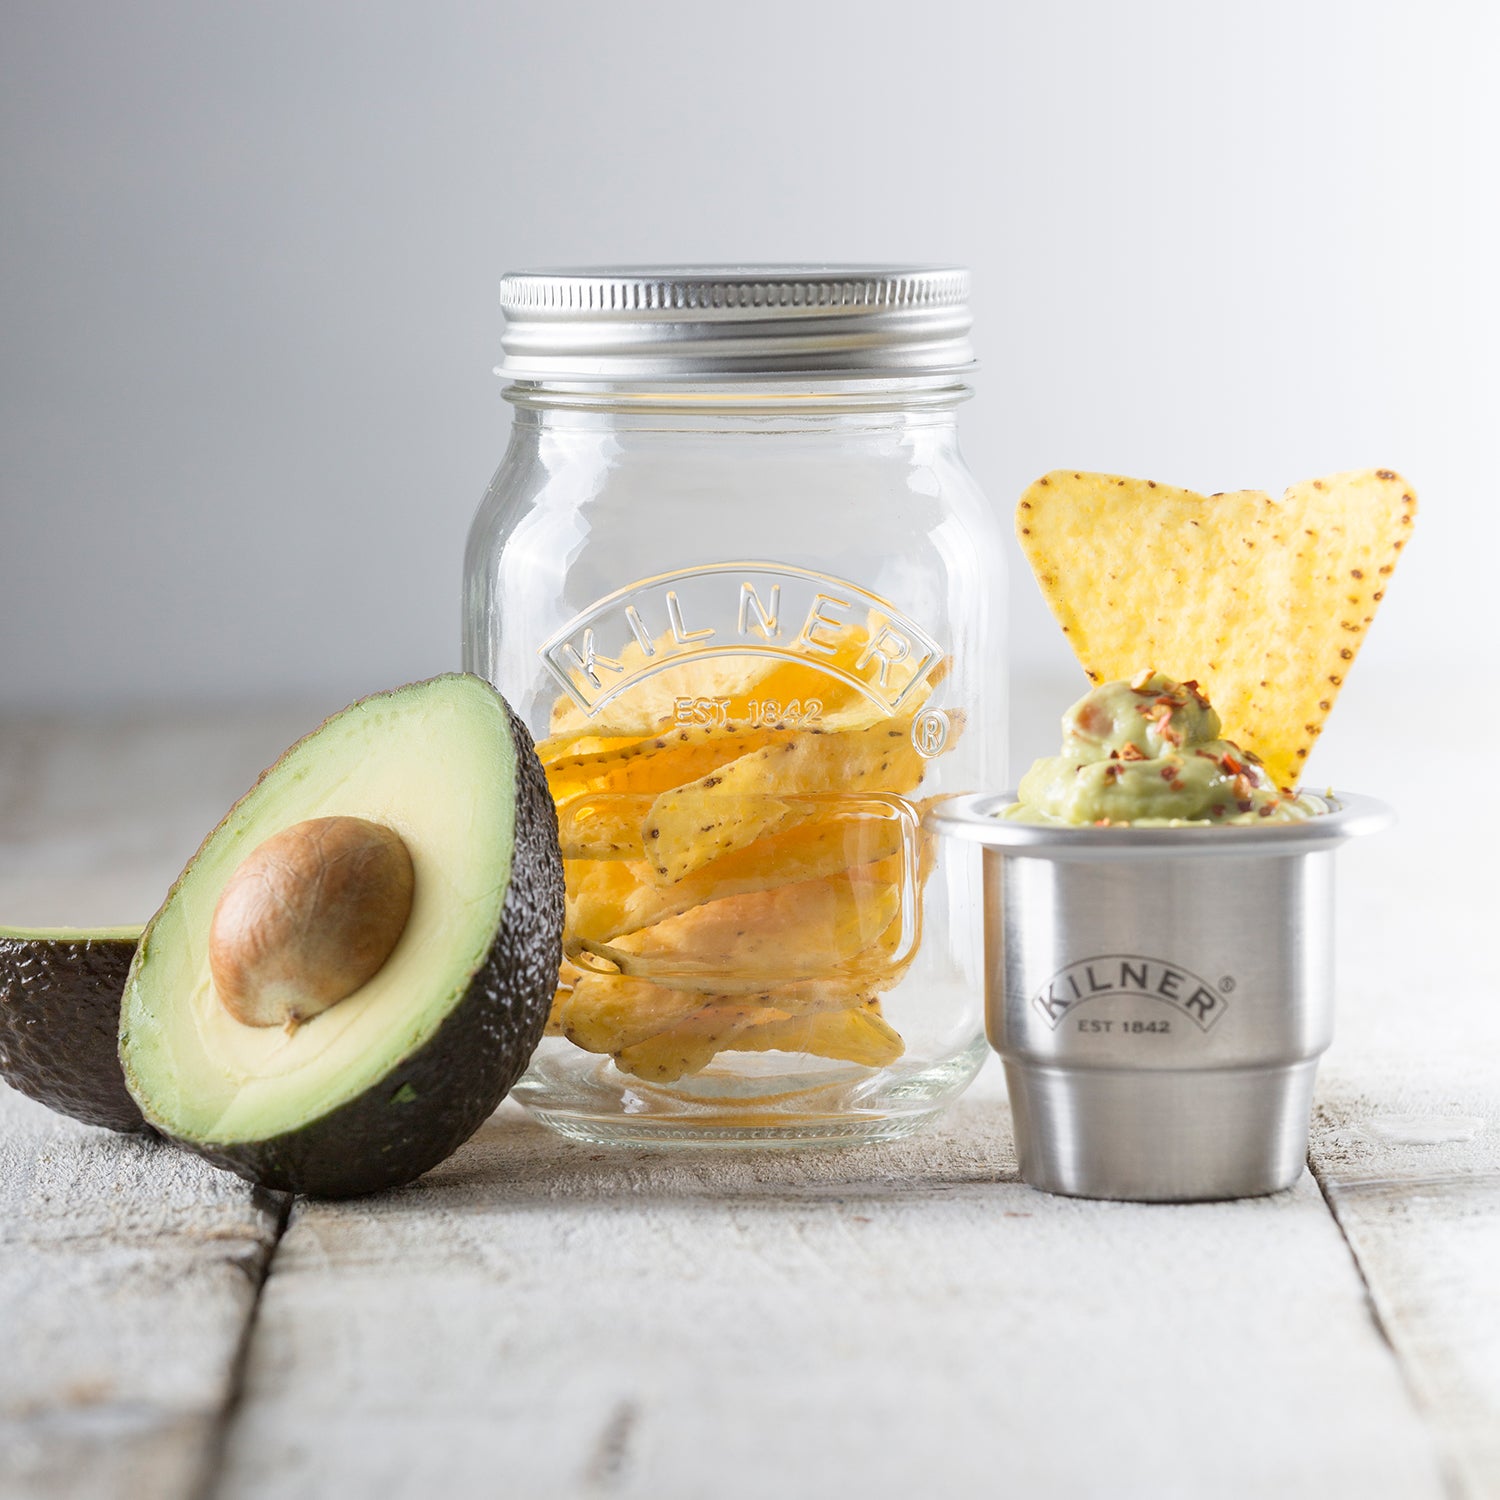 KILNER | Snack-To-Go Glas mit Behälter, 0.5 Liter – A-fine